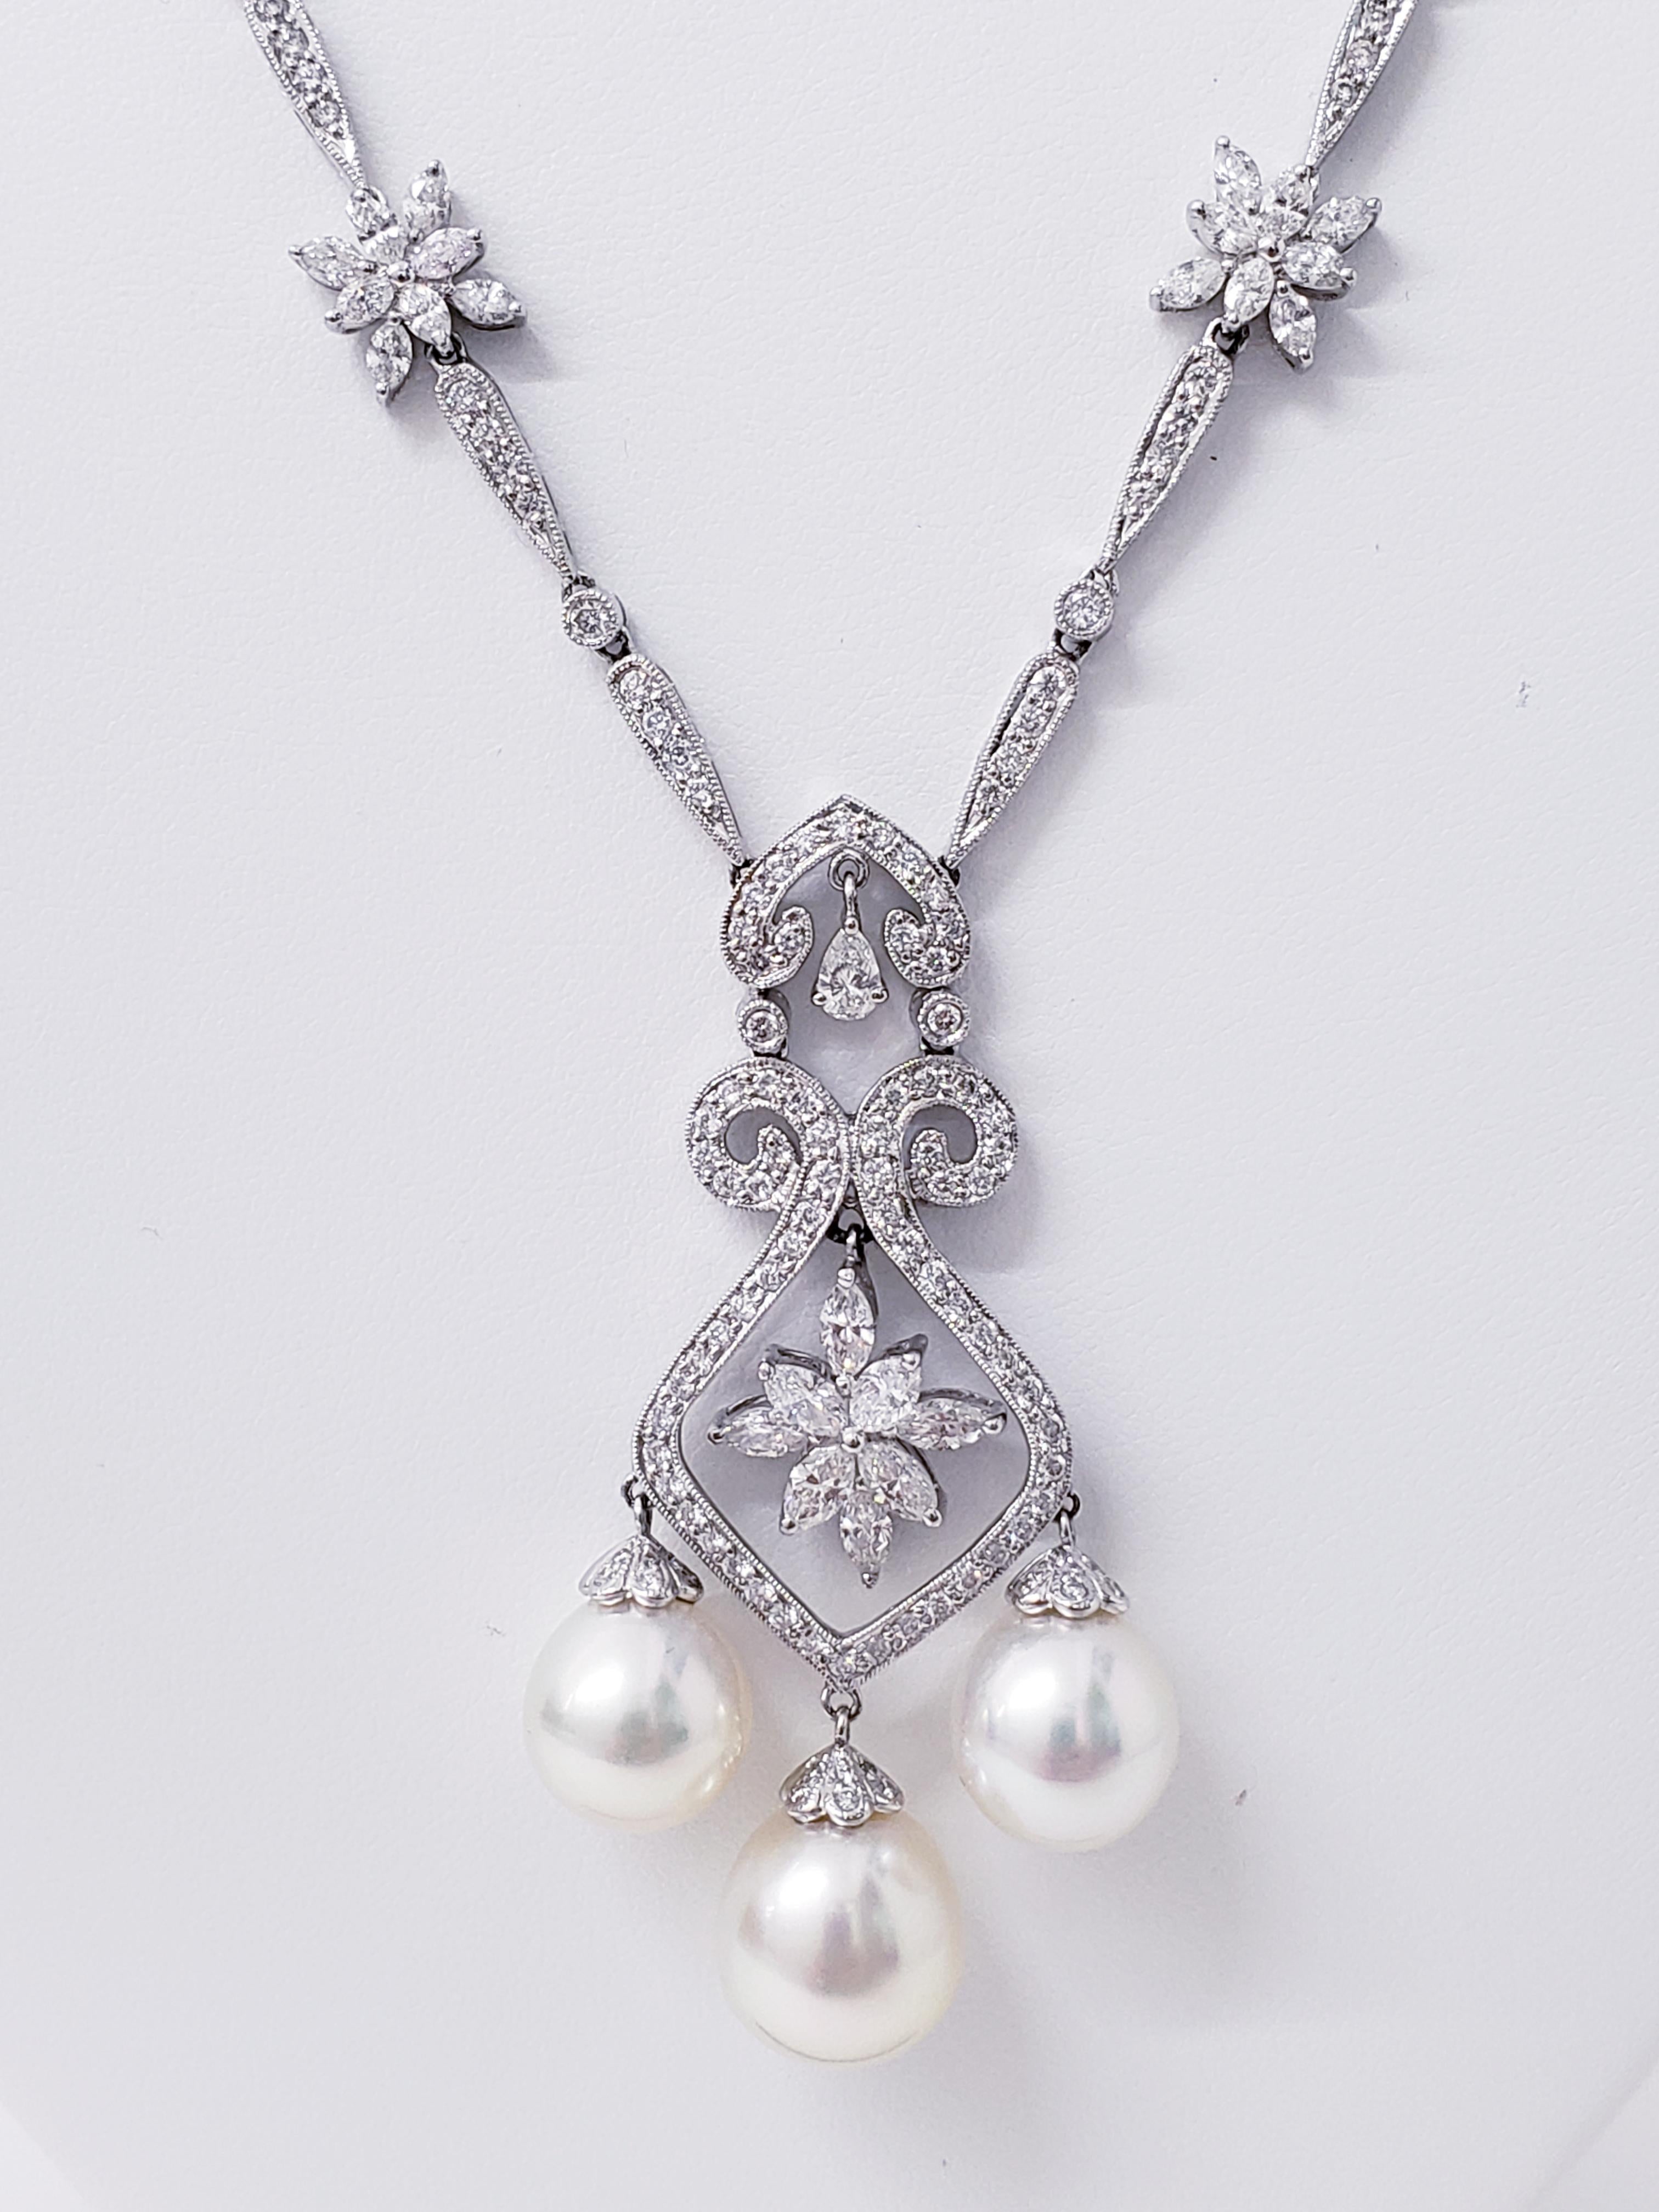 Collier Art Déco avec perles de 11 mm et diamants de 7 carats. La perle centrale mesure environ 11,35 mm et les perles latérales 10,40 mm chacune. Les diamants sont des marquises, des poires et des diamants ronds d'un poids total de 7 carats.  Il